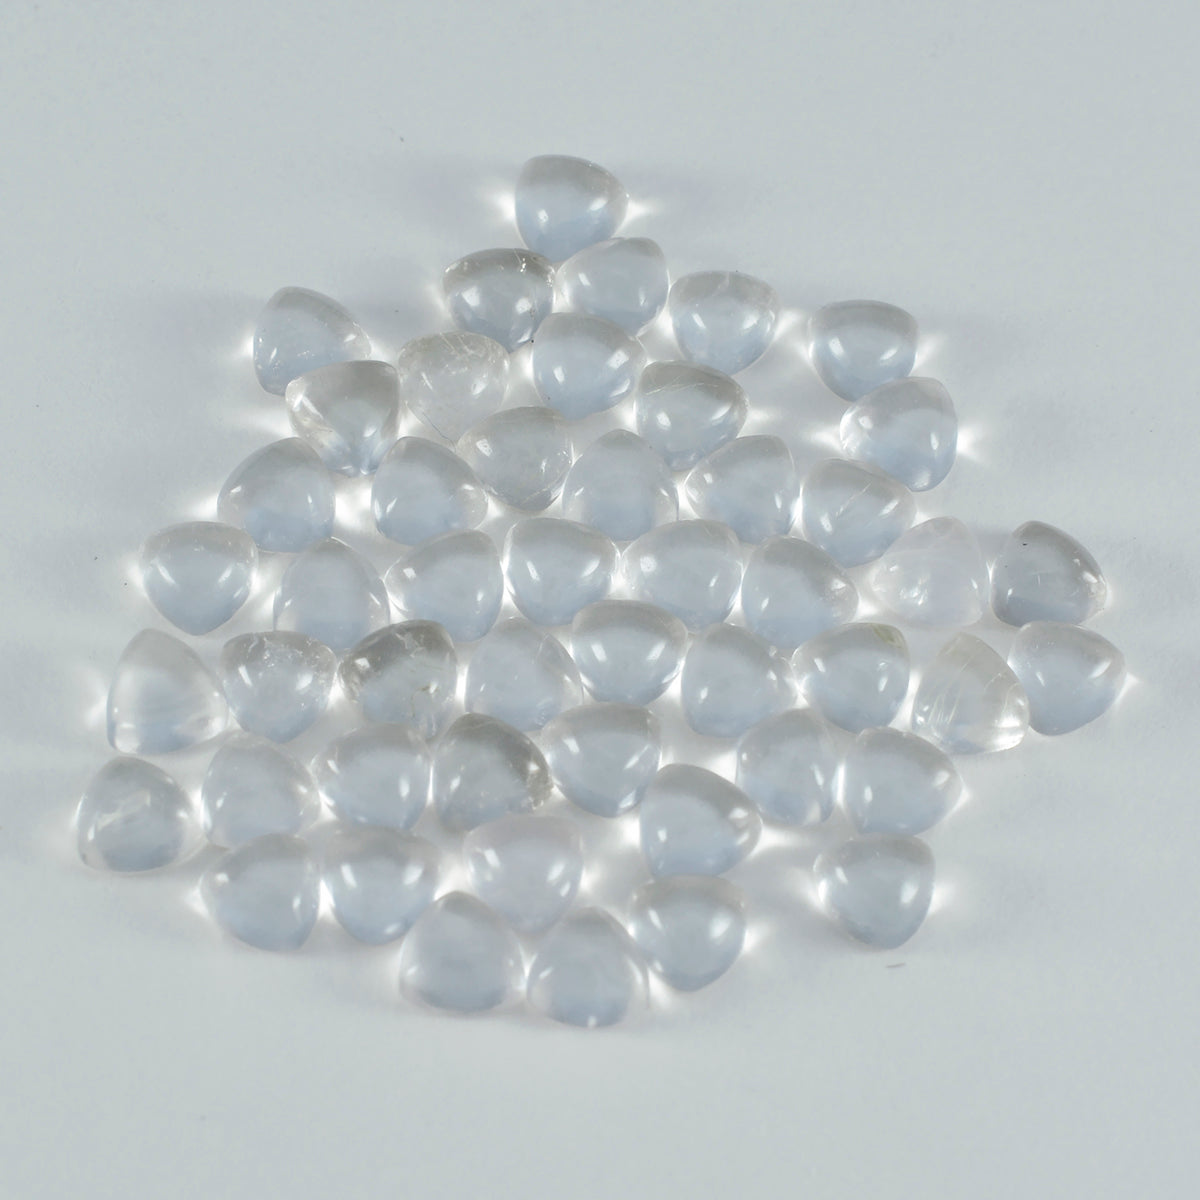 Riyogems 1 Stück weißer Kristallquarz-Cabochon, 6 x 6 mm, Trillionenform, Edelstein von fantastischer Qualität